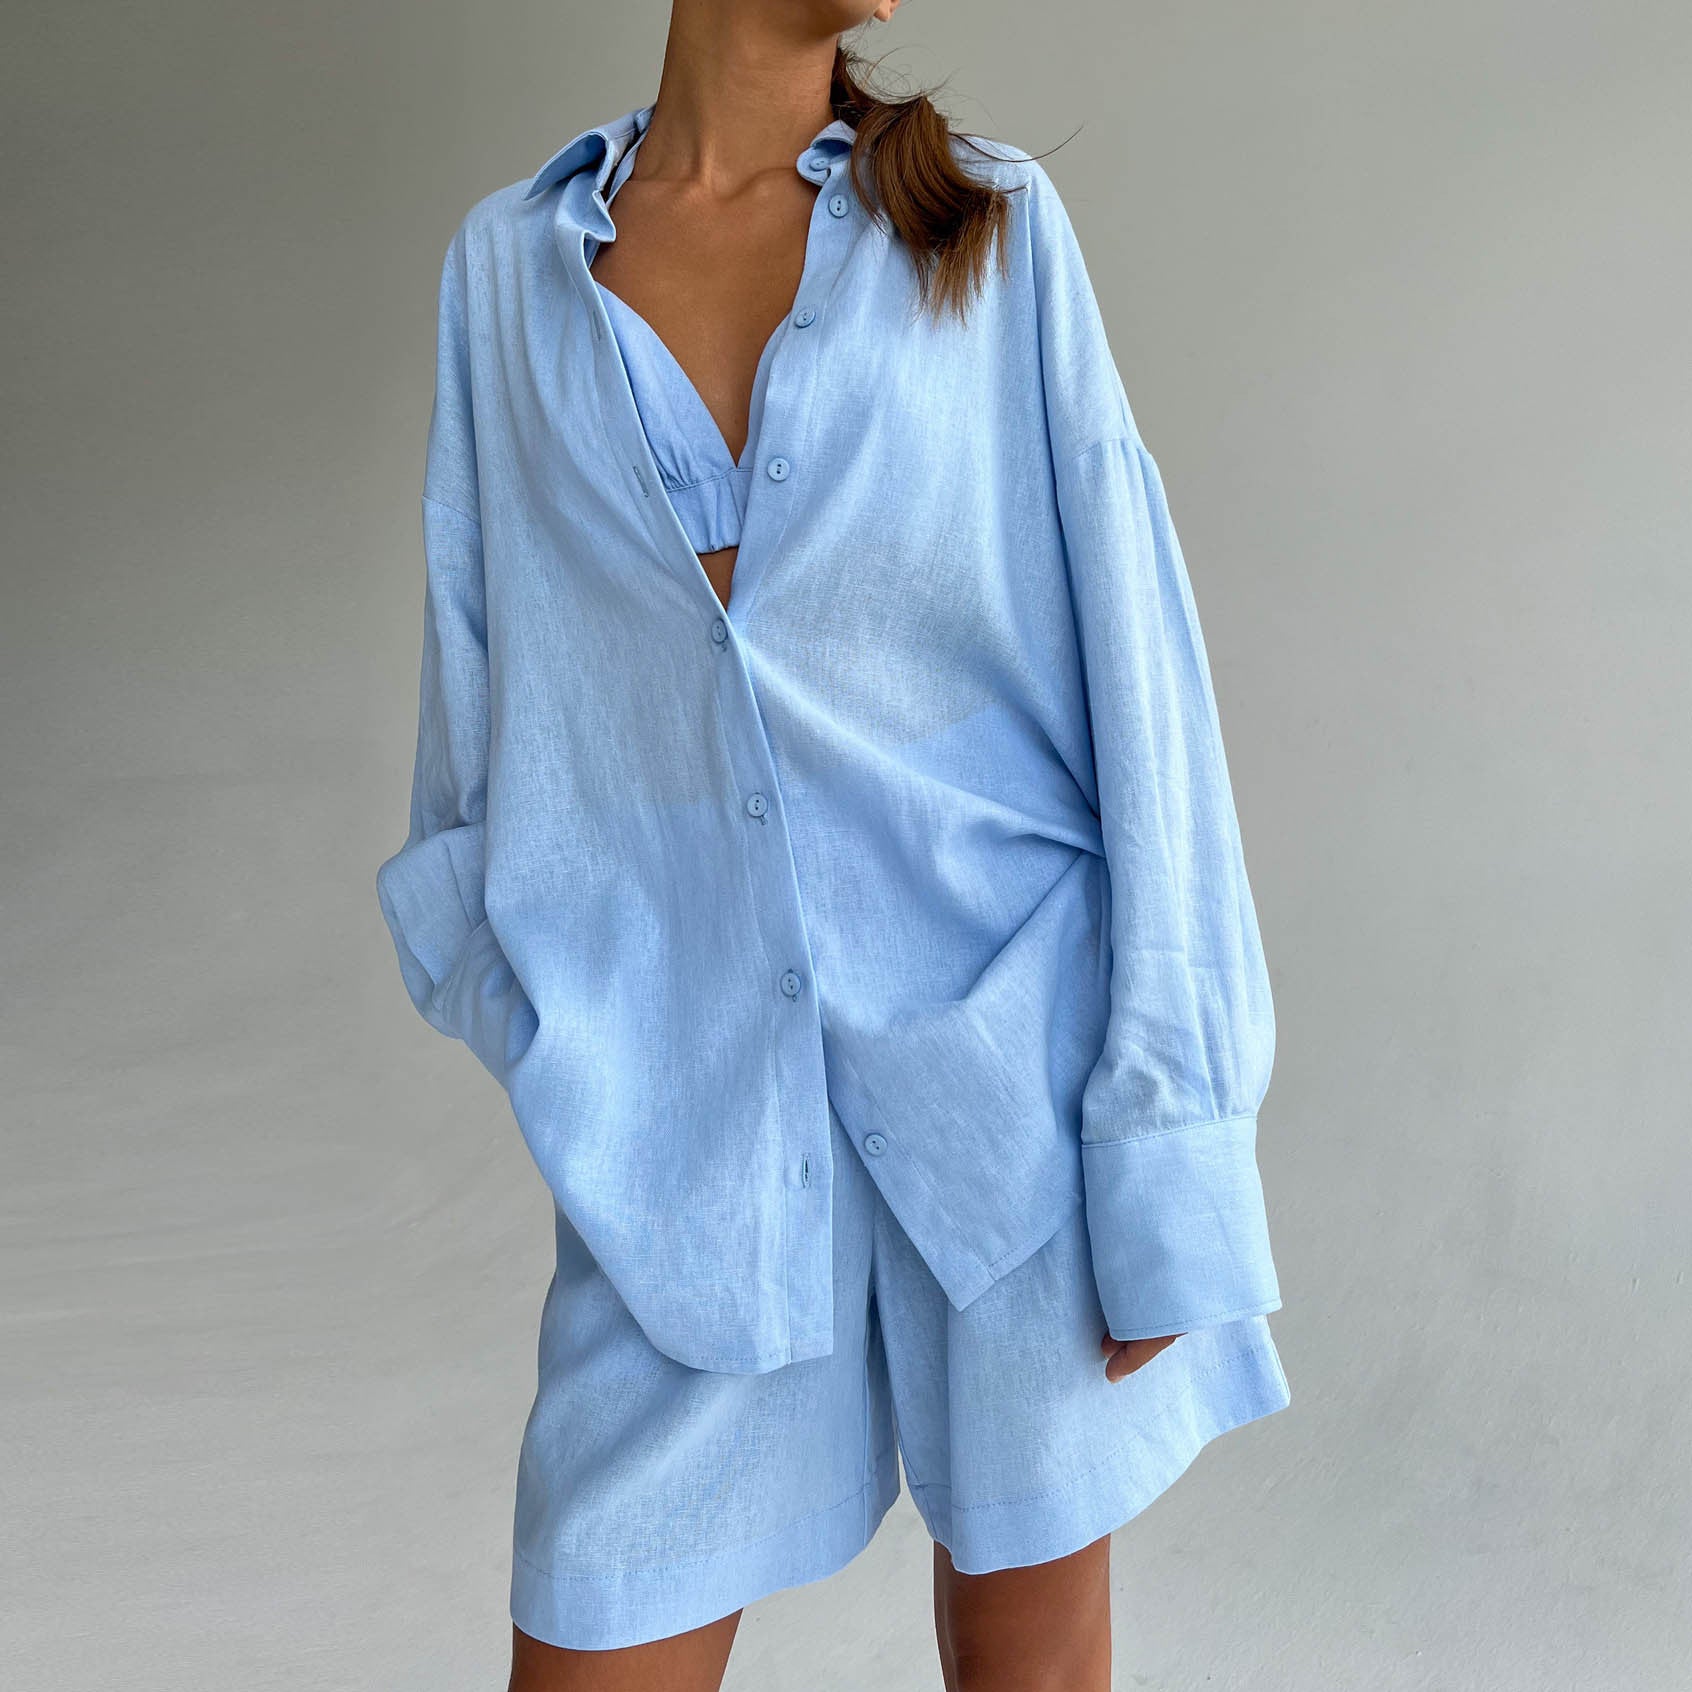 NTG Fad SUIT Light blue shorts / S cotton linen vest shirt four piece set